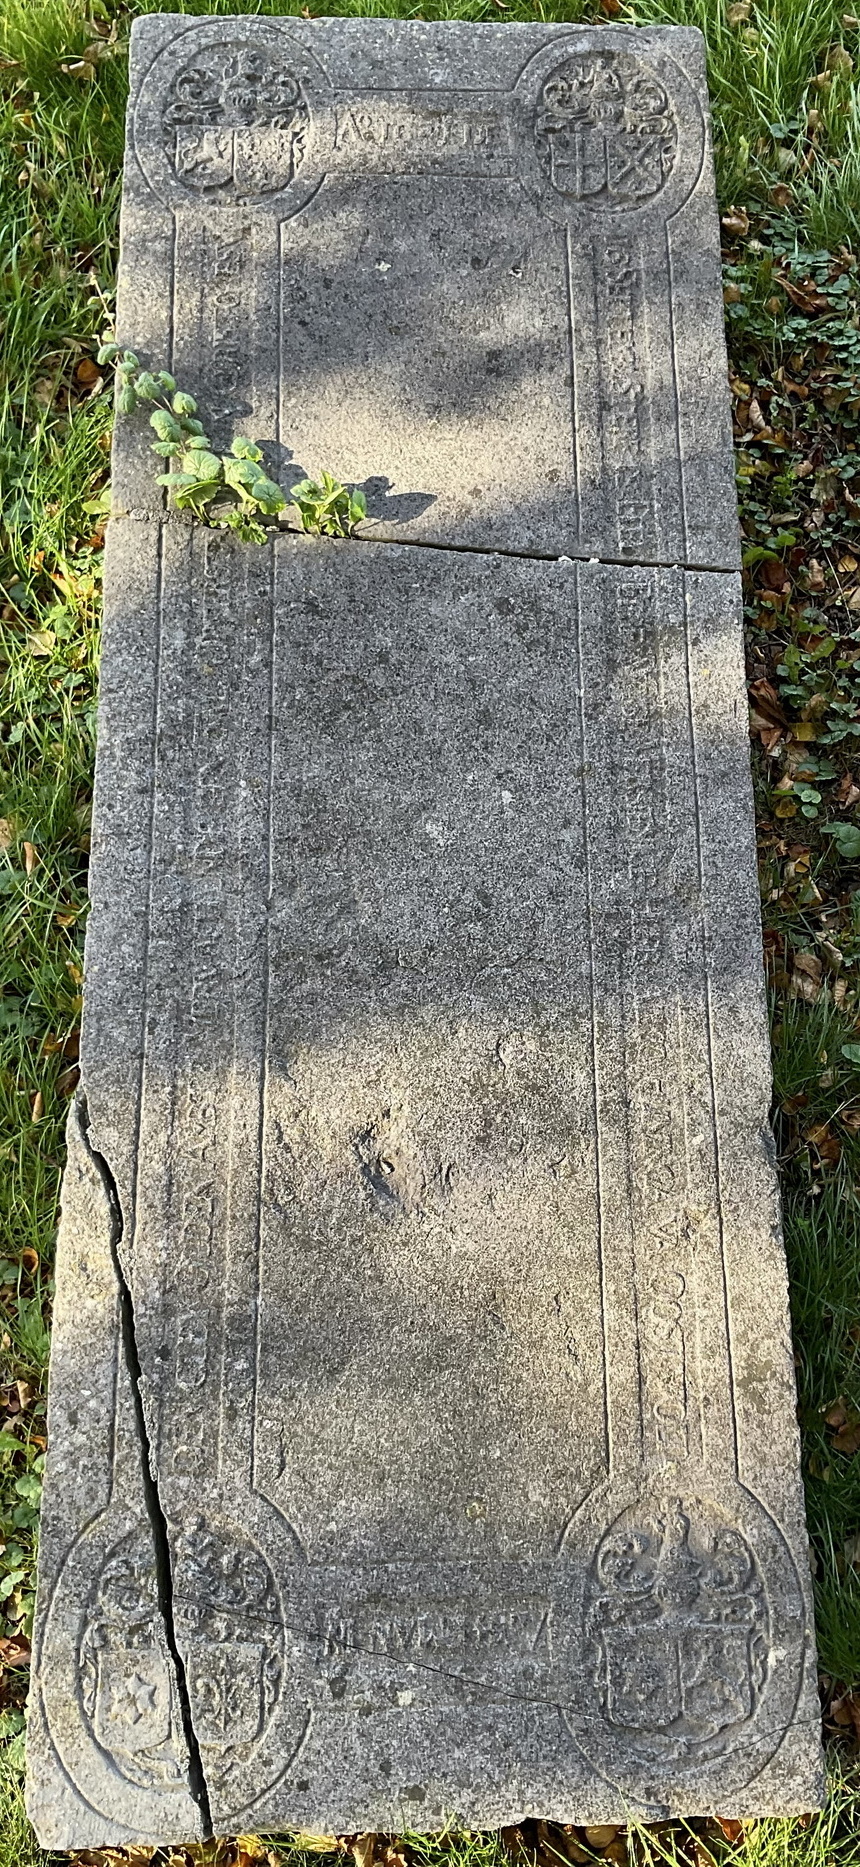 Grafsteen van Aylcko Eppens Huninga op het kerkhof rond de kerk van Woldendorp.

A° 1641, DEN 16 SEPTEMB., STERF DE EDELE EERF. WYSE VERSIENIGE HEER AILCO HUNINGA VAN OOSTWOLT, AMBTMAN IN DEN CLEY OLDEN AMBTE, VERWACHTENDE EEN ZAL. OPEERSTANDINGE IN CHRISTO JESU. 
Kwartieren: 
I Rechts: Huninga; Links: Tiddinga. Helmteken: Huninga. 
II Rechts: Engelkens. Links: Prenger. Helmteken: Engelkens. 
III Rechts: Bunninga. Links: Gockinga. Helmteken: Bunninga. 
IV Rechts: Bunninga. Links: Poptada. Helmteken: Bunninga. 
N.B. Zie: GDW, nr. 4297. GDW, blz. 778, nr. [4296]. 
Foto: ©Jur Kuipers, okt. 2022.